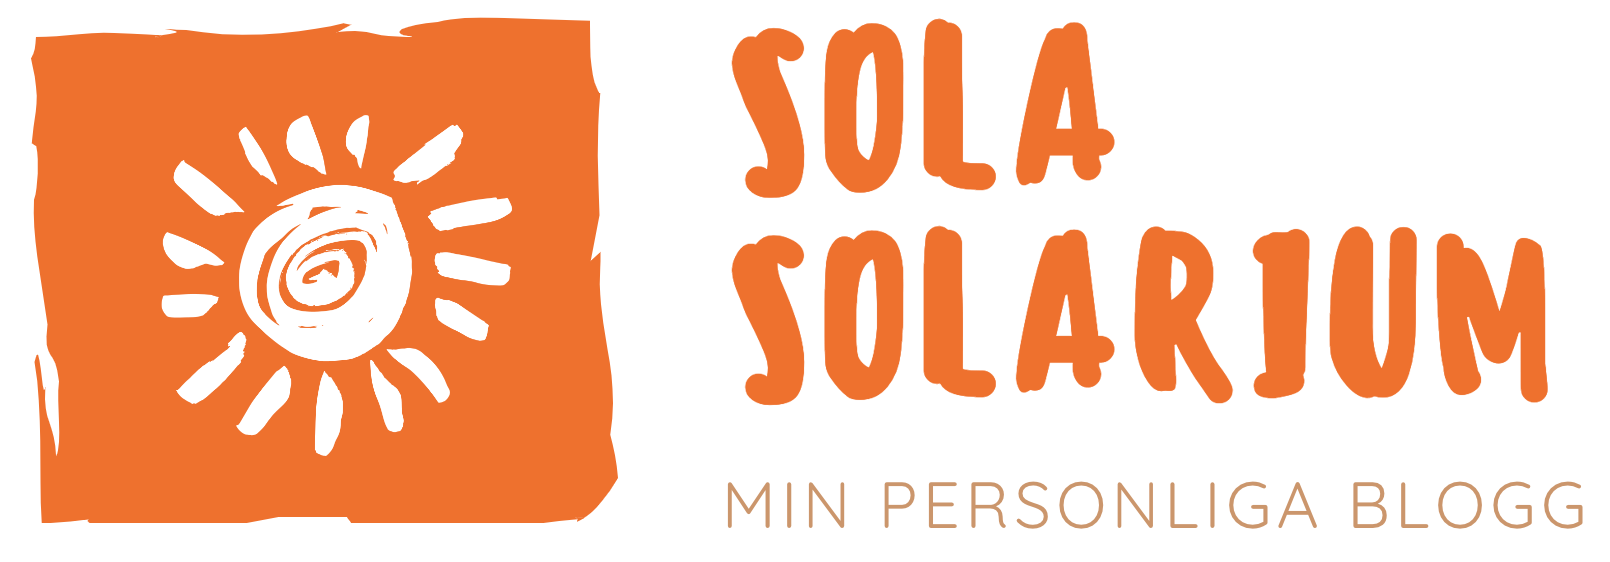 Sola Solarium – Bloggen där du kan följa med i min vardag